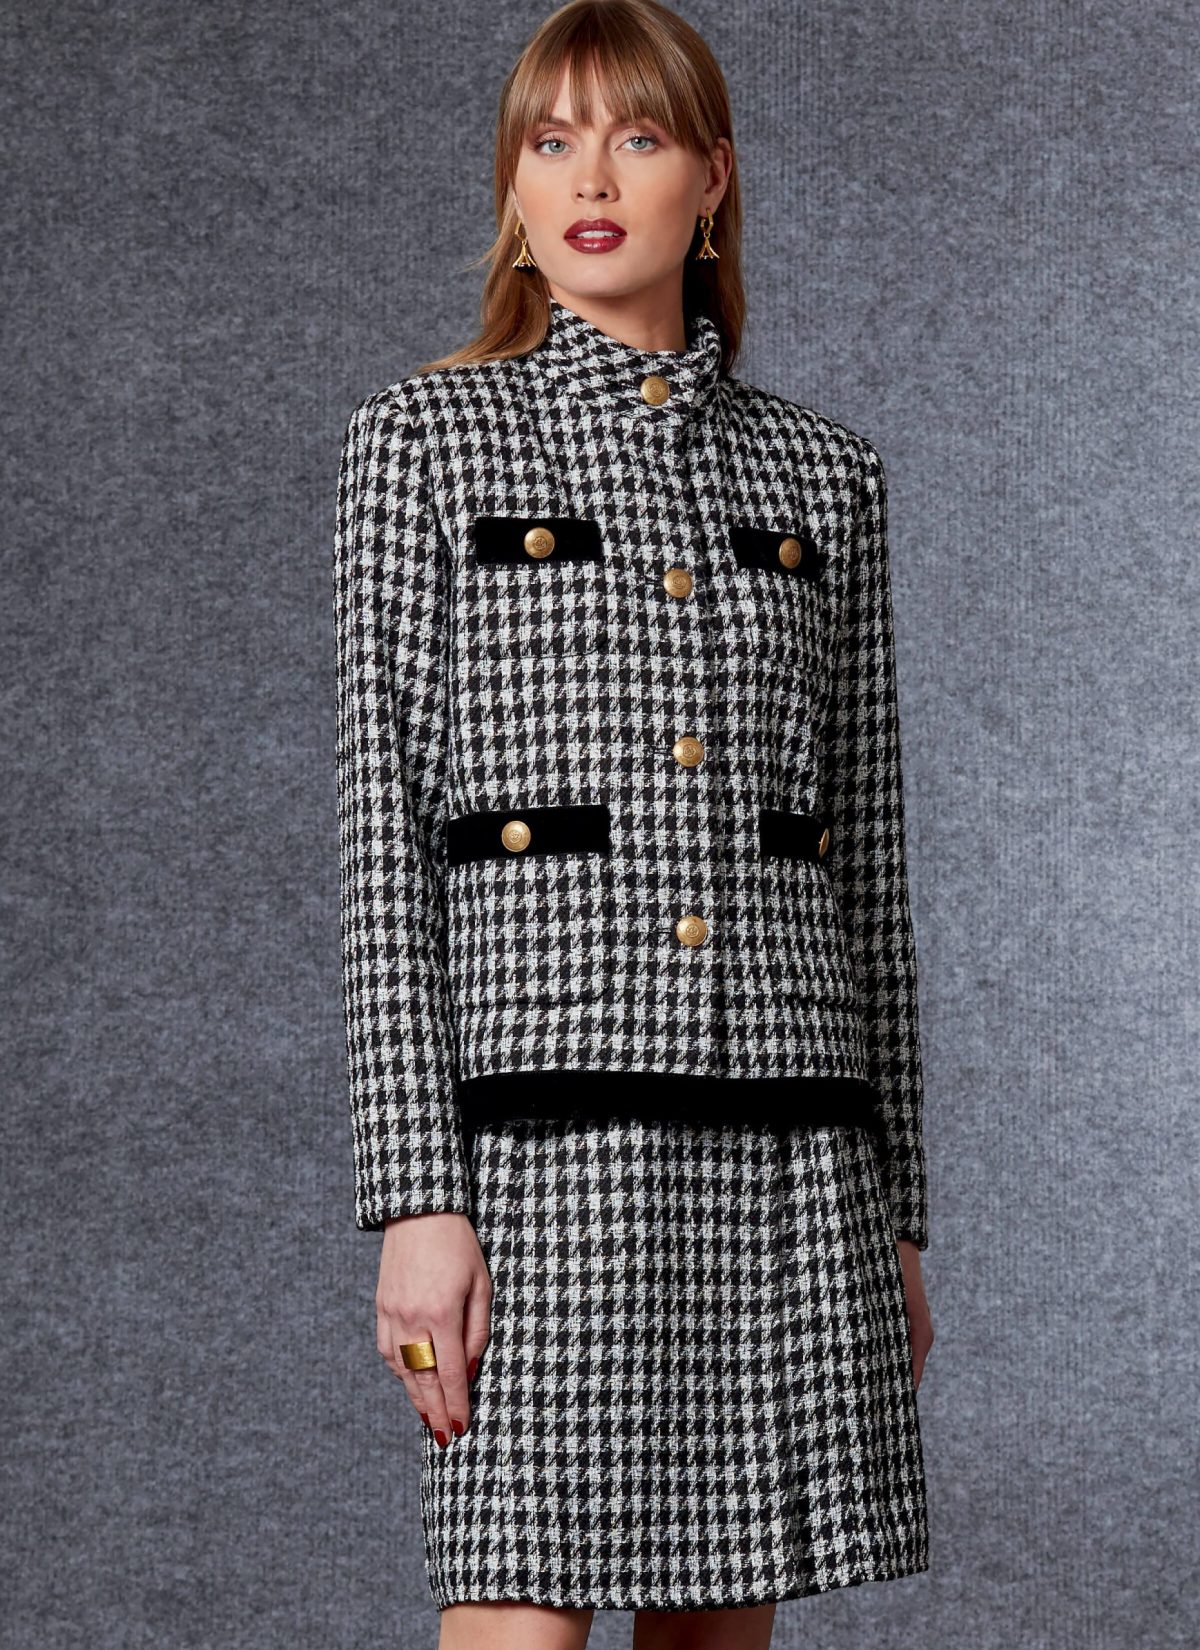 Vogue Patterns V1717 Misses' Jacket or Coat, Trousers & Skirt